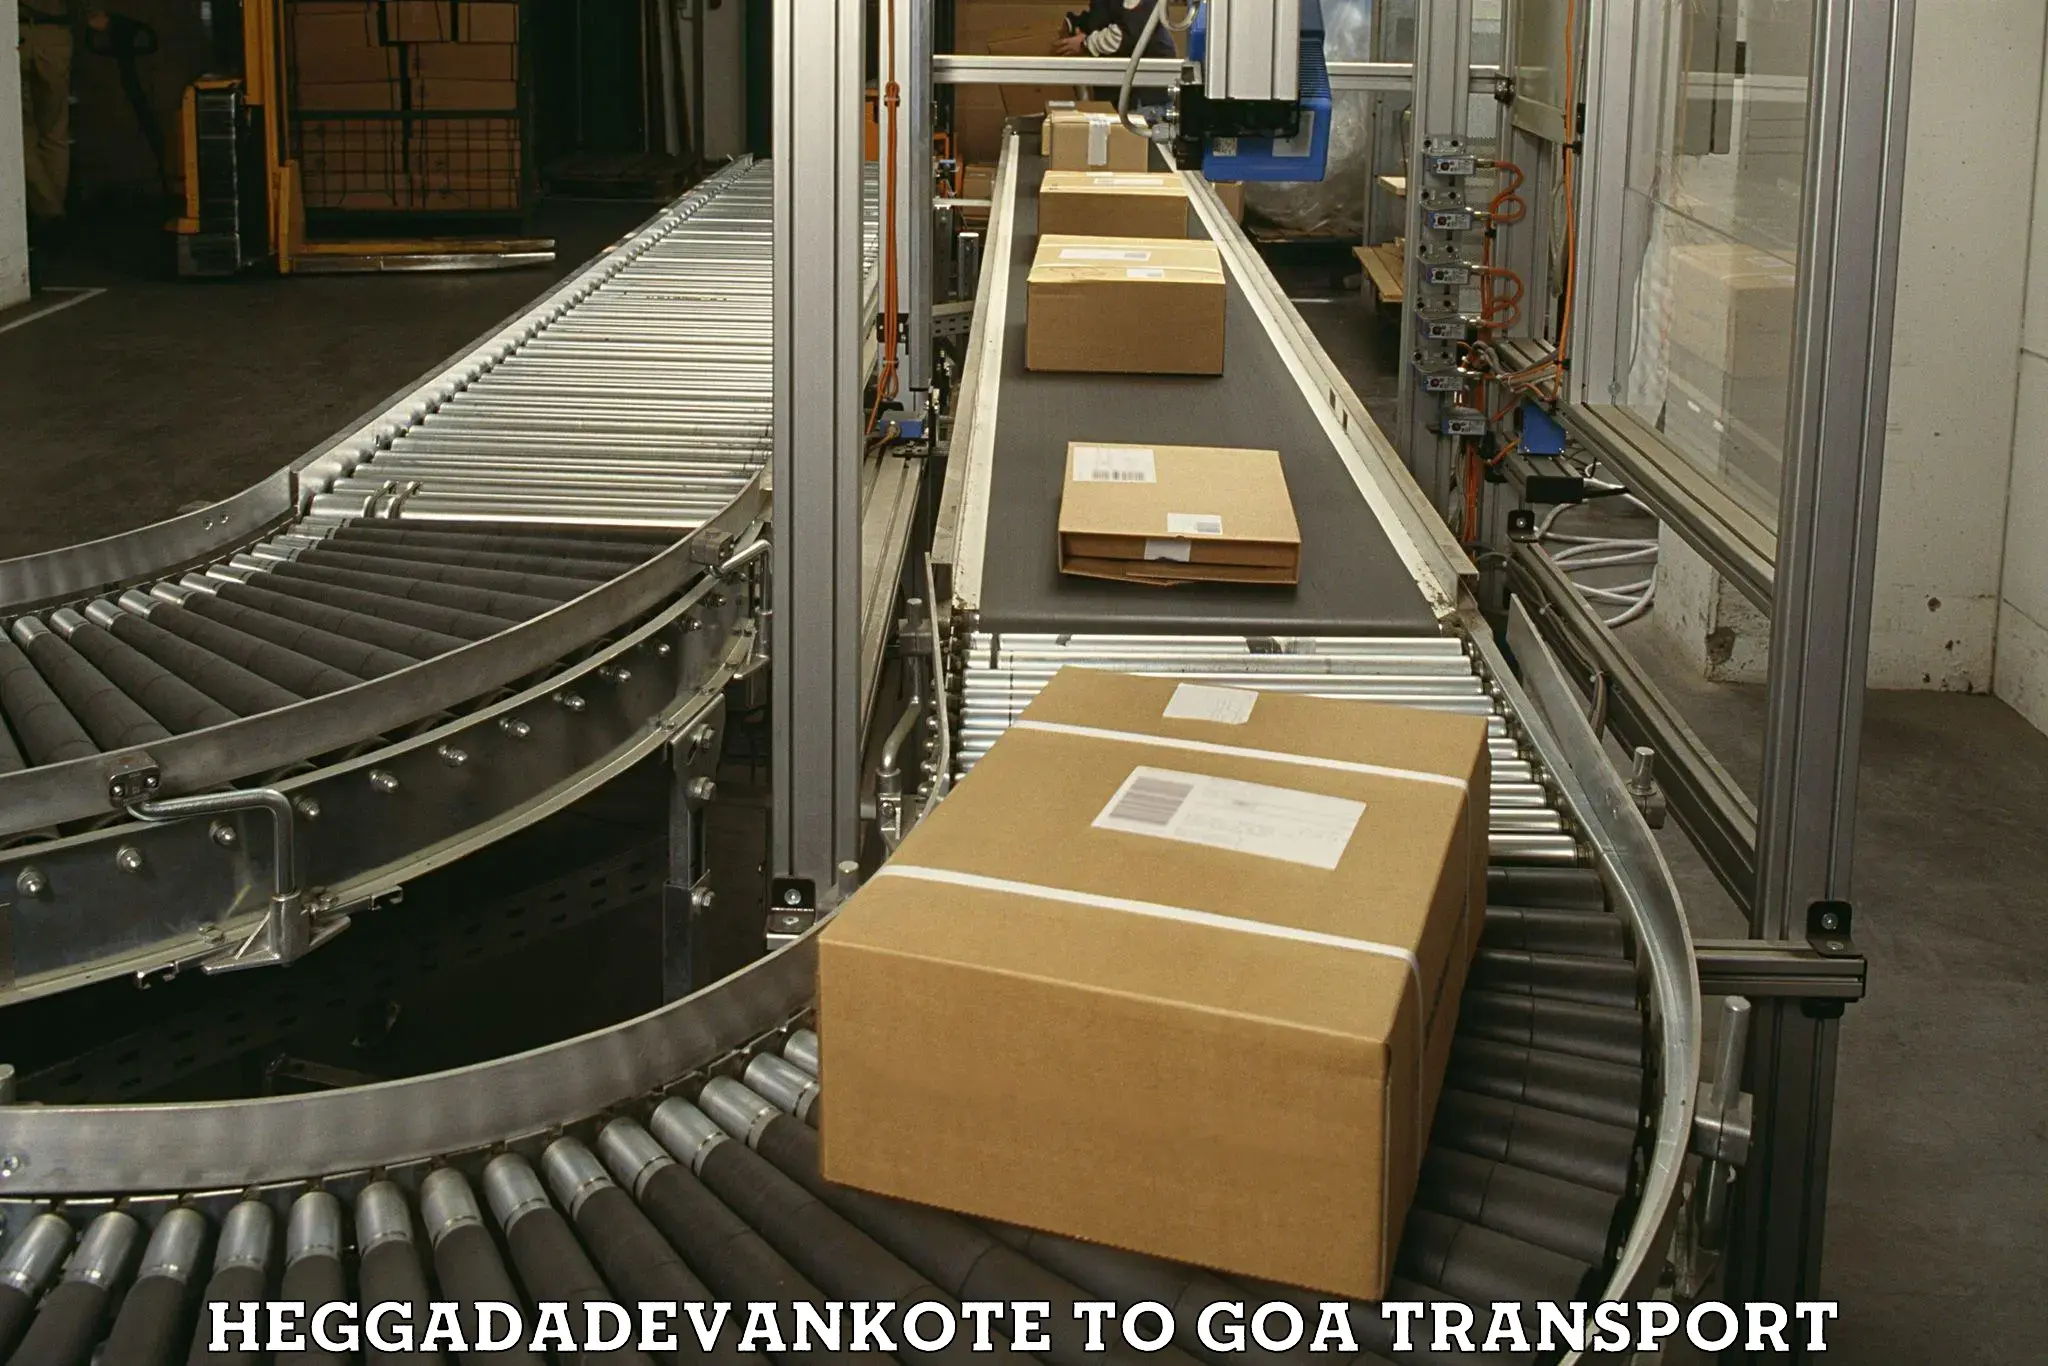 Cargo transport services Heggadadevankote to NIT Goa